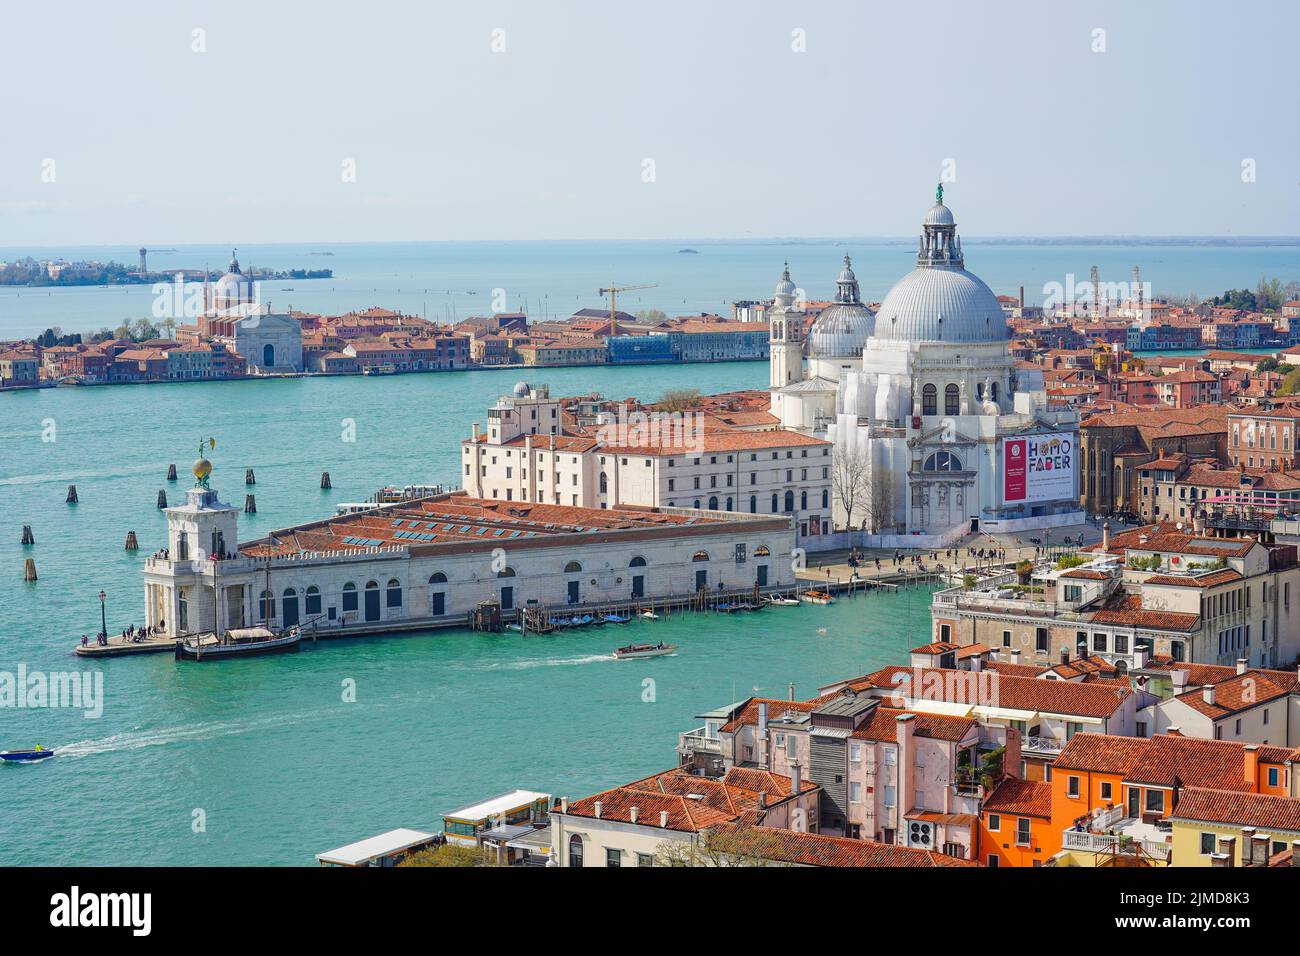 Basilica di Santa Maria della Salute in Venice, Italy Stock Photo